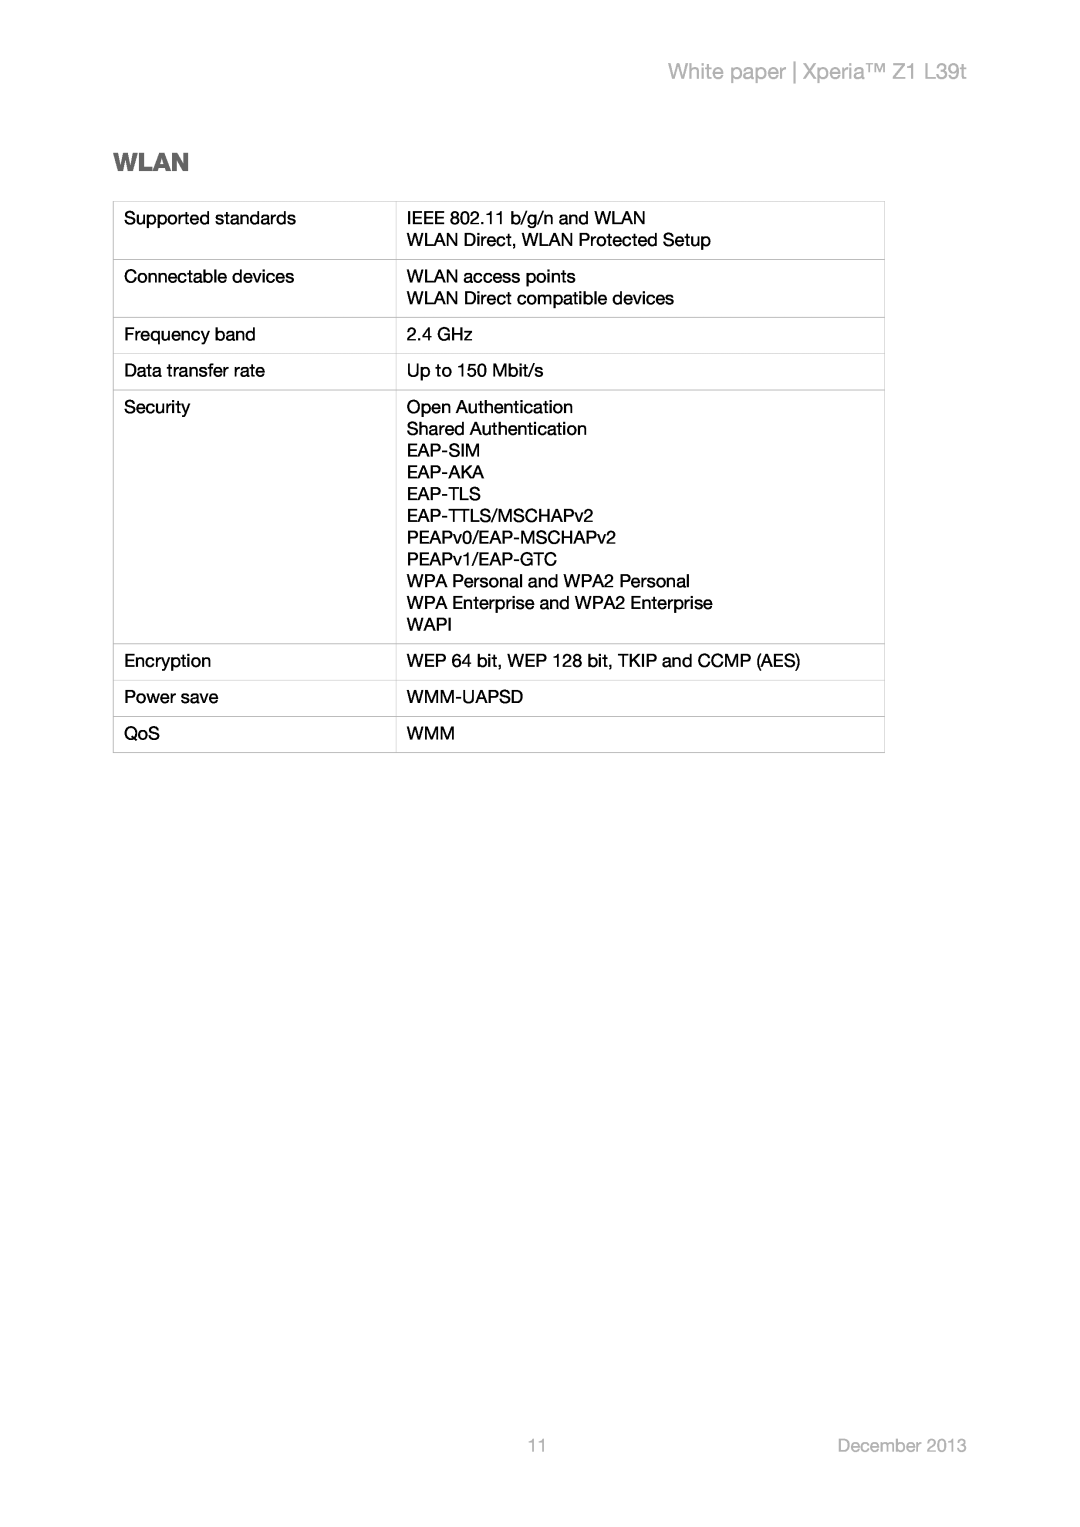 Sony manual Wlan, White paper Xperia Z1 L39t, December 